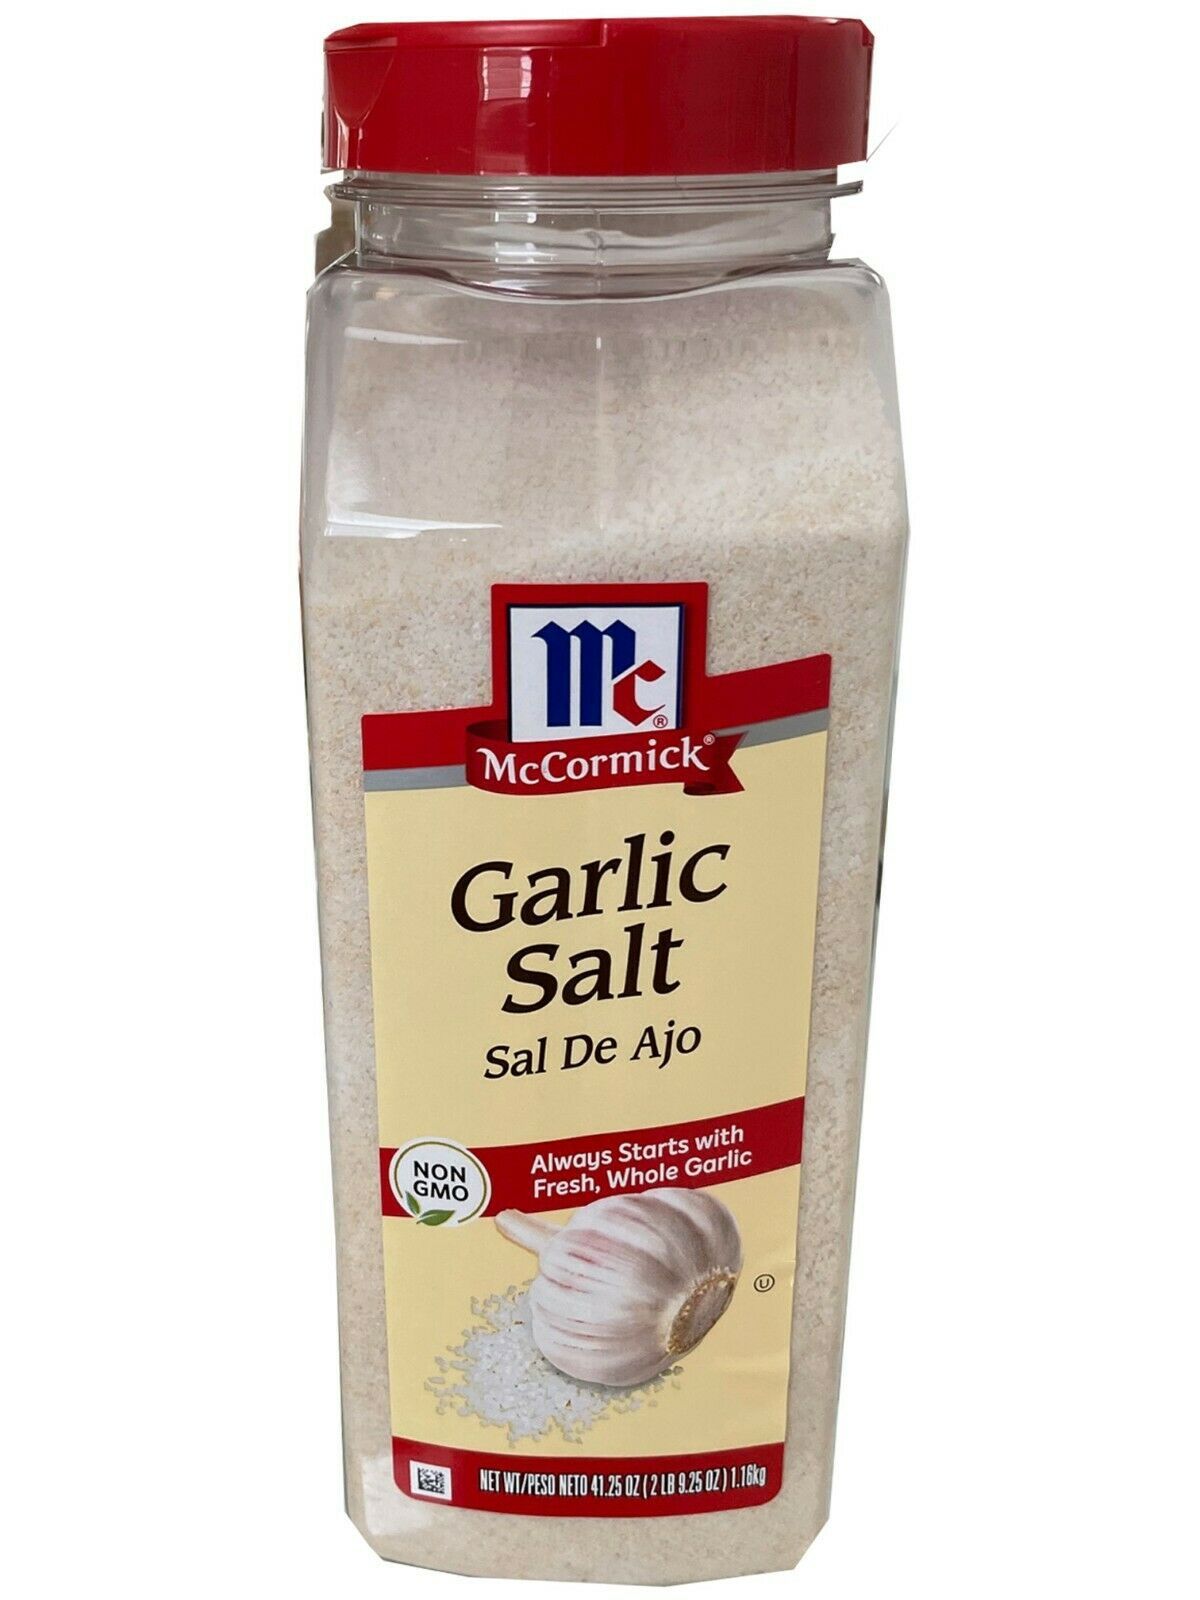  McCormick Garlic Salt , 41.25 oz  Non GMO - $13.55